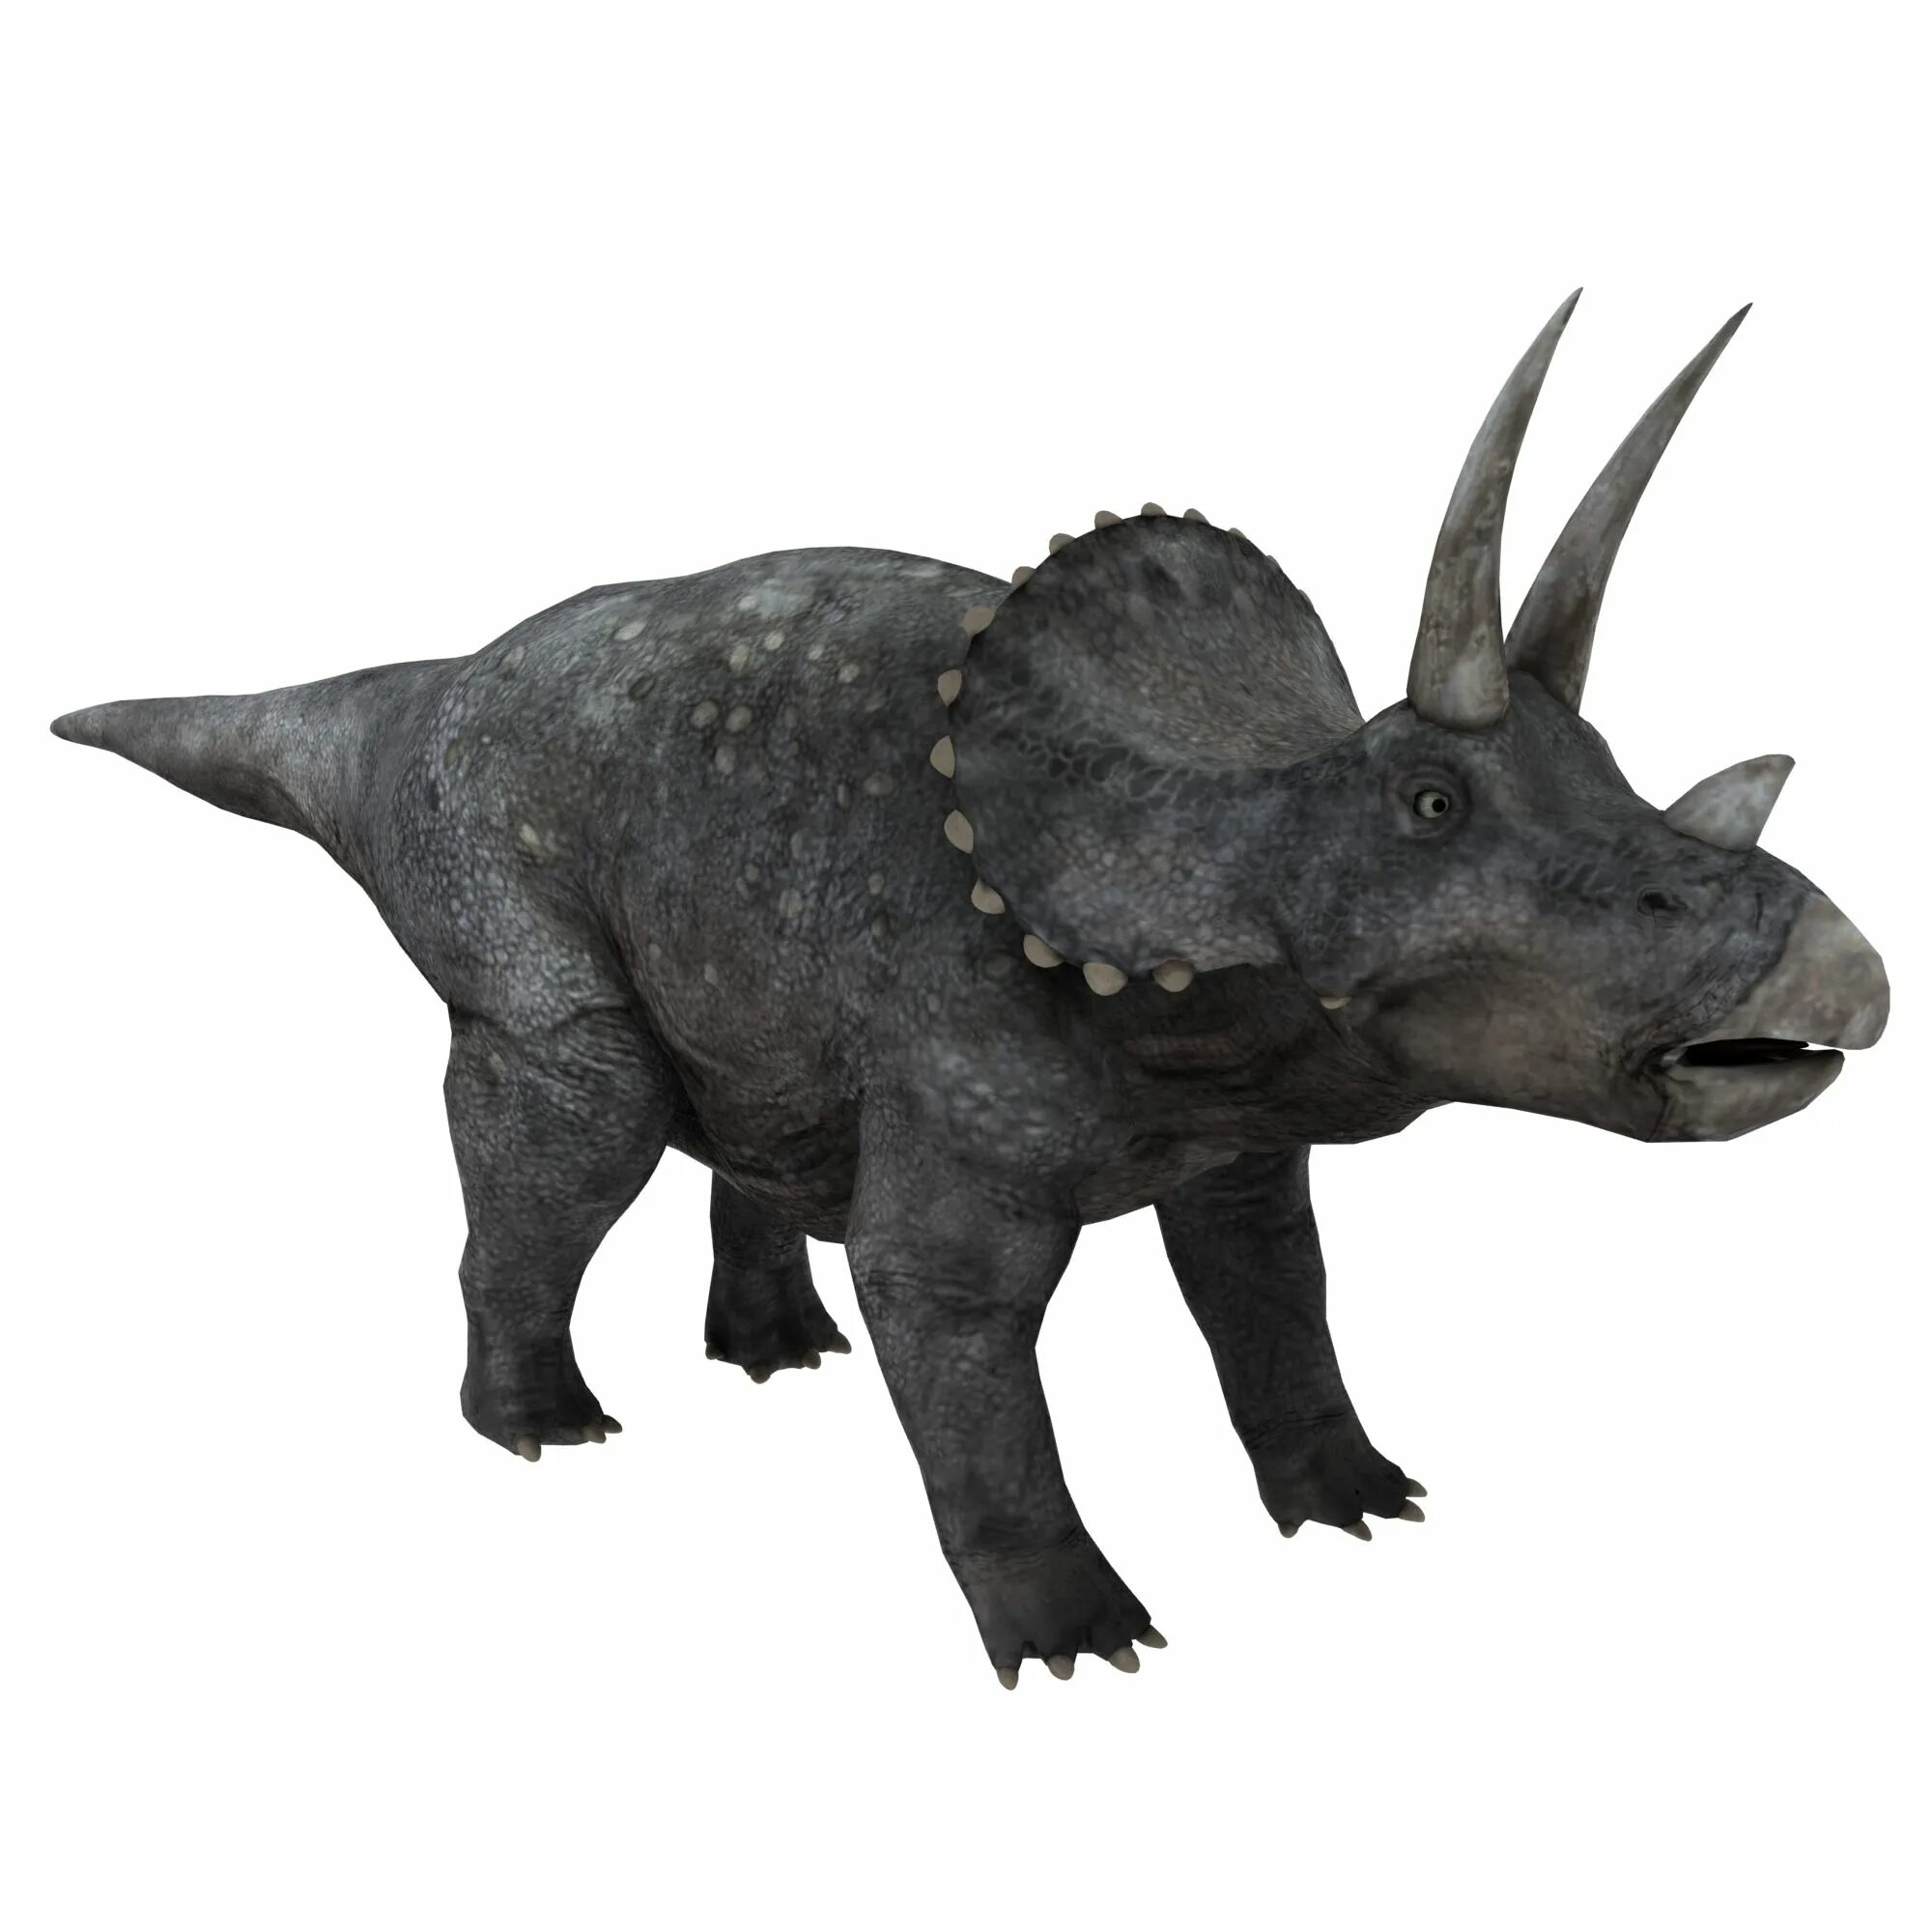 Про трицератопса. Трицератопс 3д. Трицератопс мод 2. Динозавры Трицератопс 3д. Динозавр 3d модель Трицератопс.